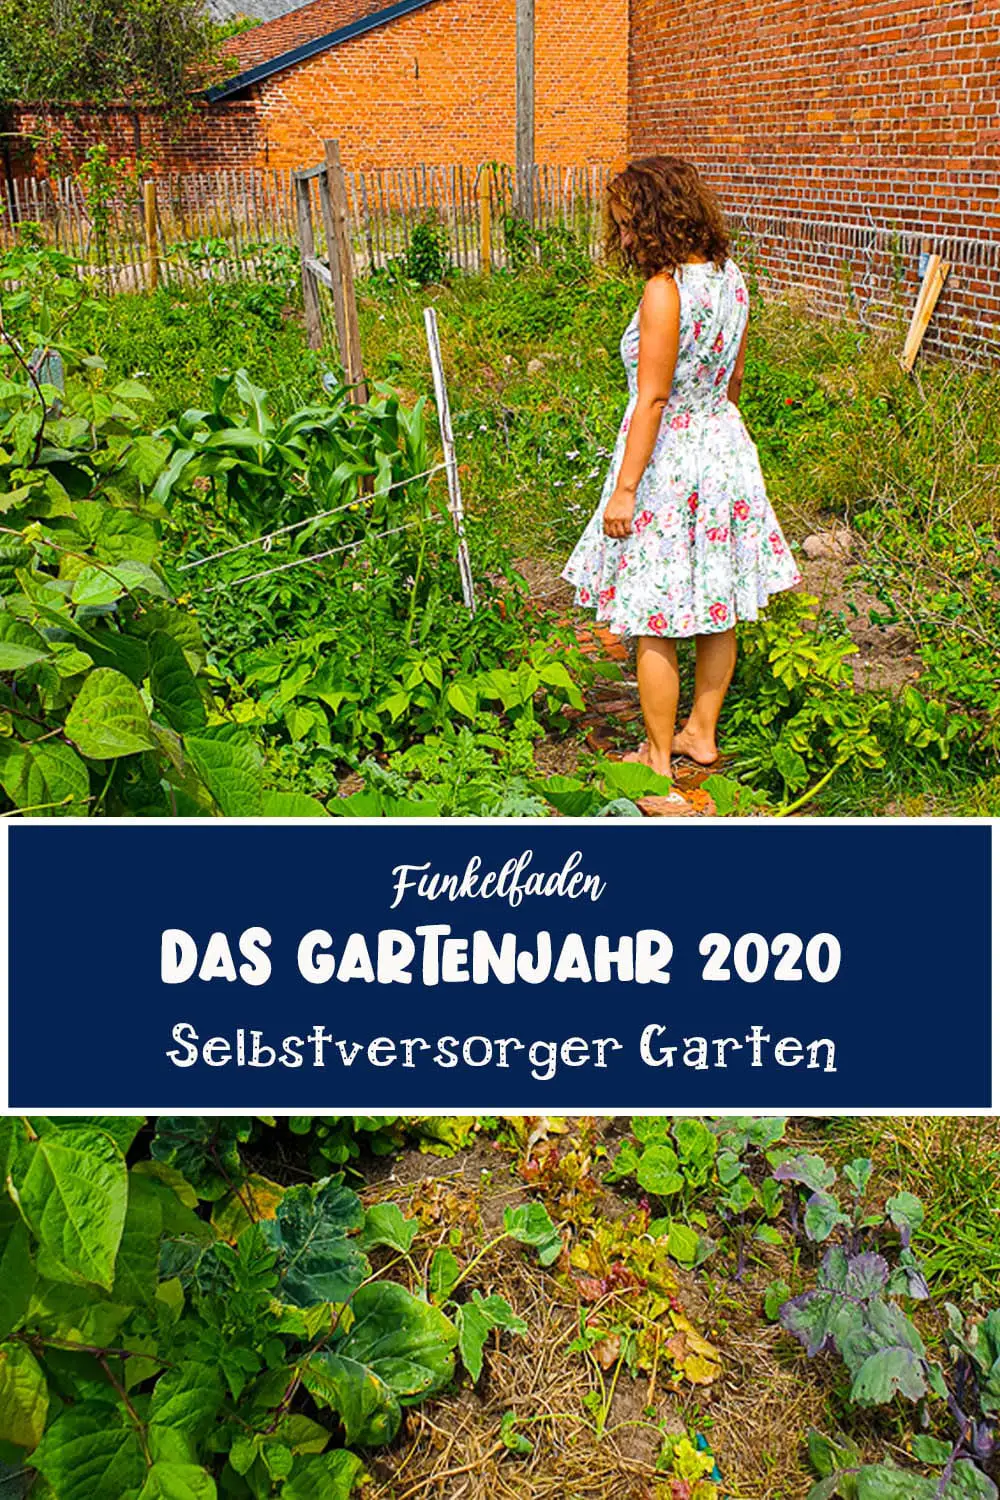 Das Gartenjahr 2020 – Ein Überblick